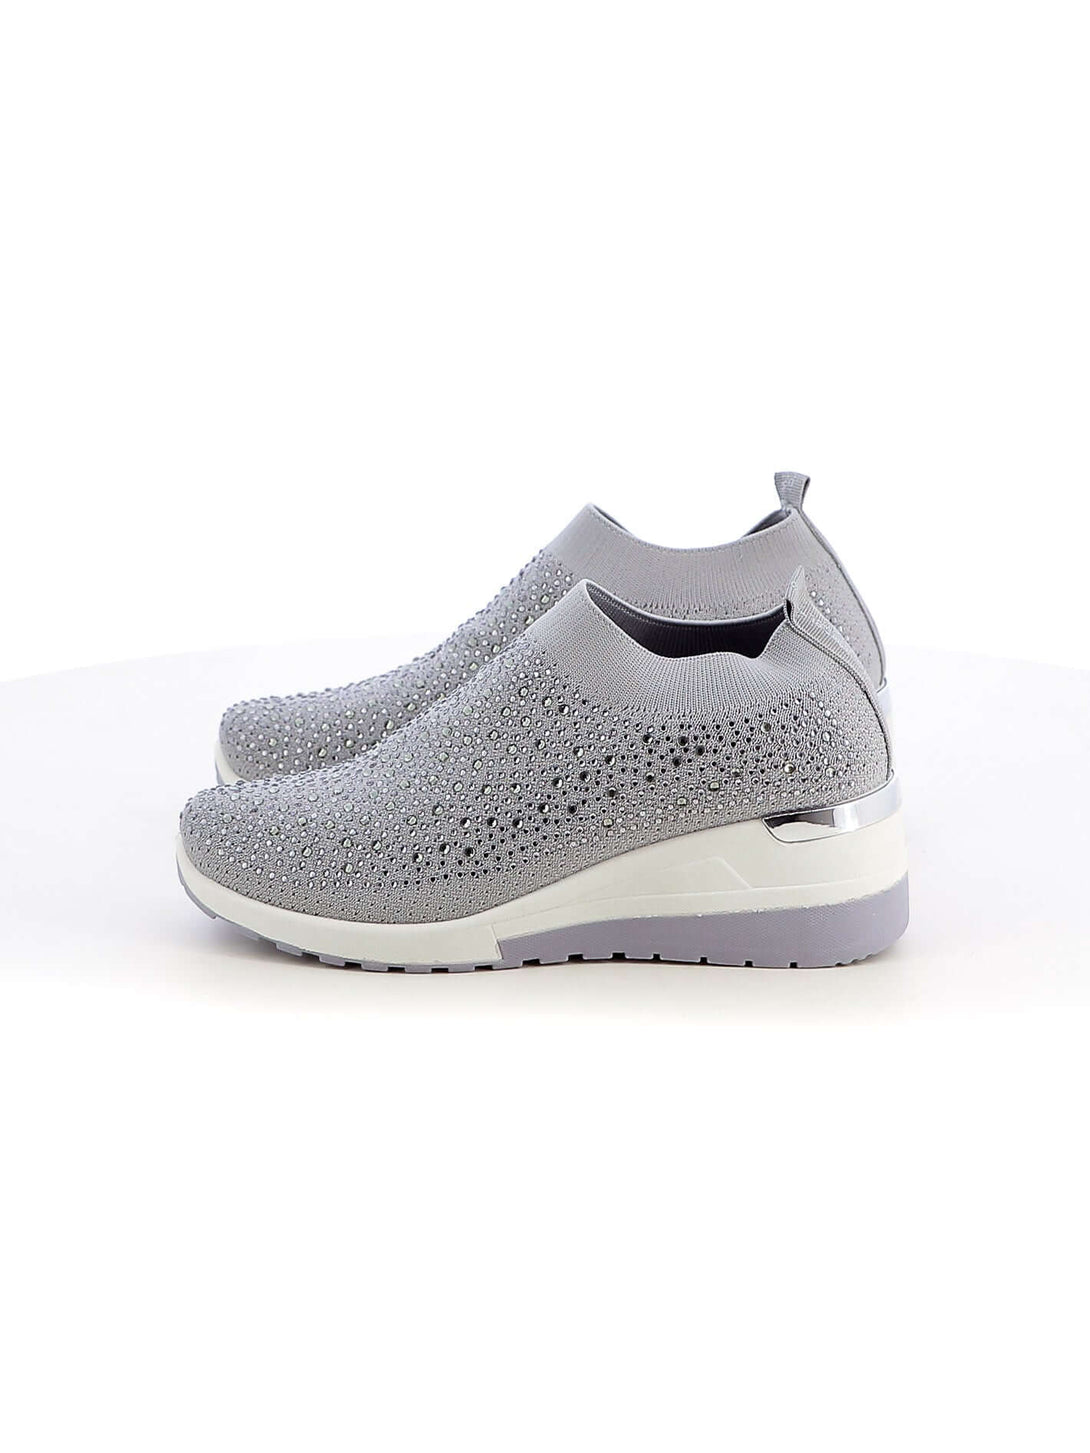 Sneakers calzino donna COTTON BELT CBW316524 grigio chiaro | Costa Superstore